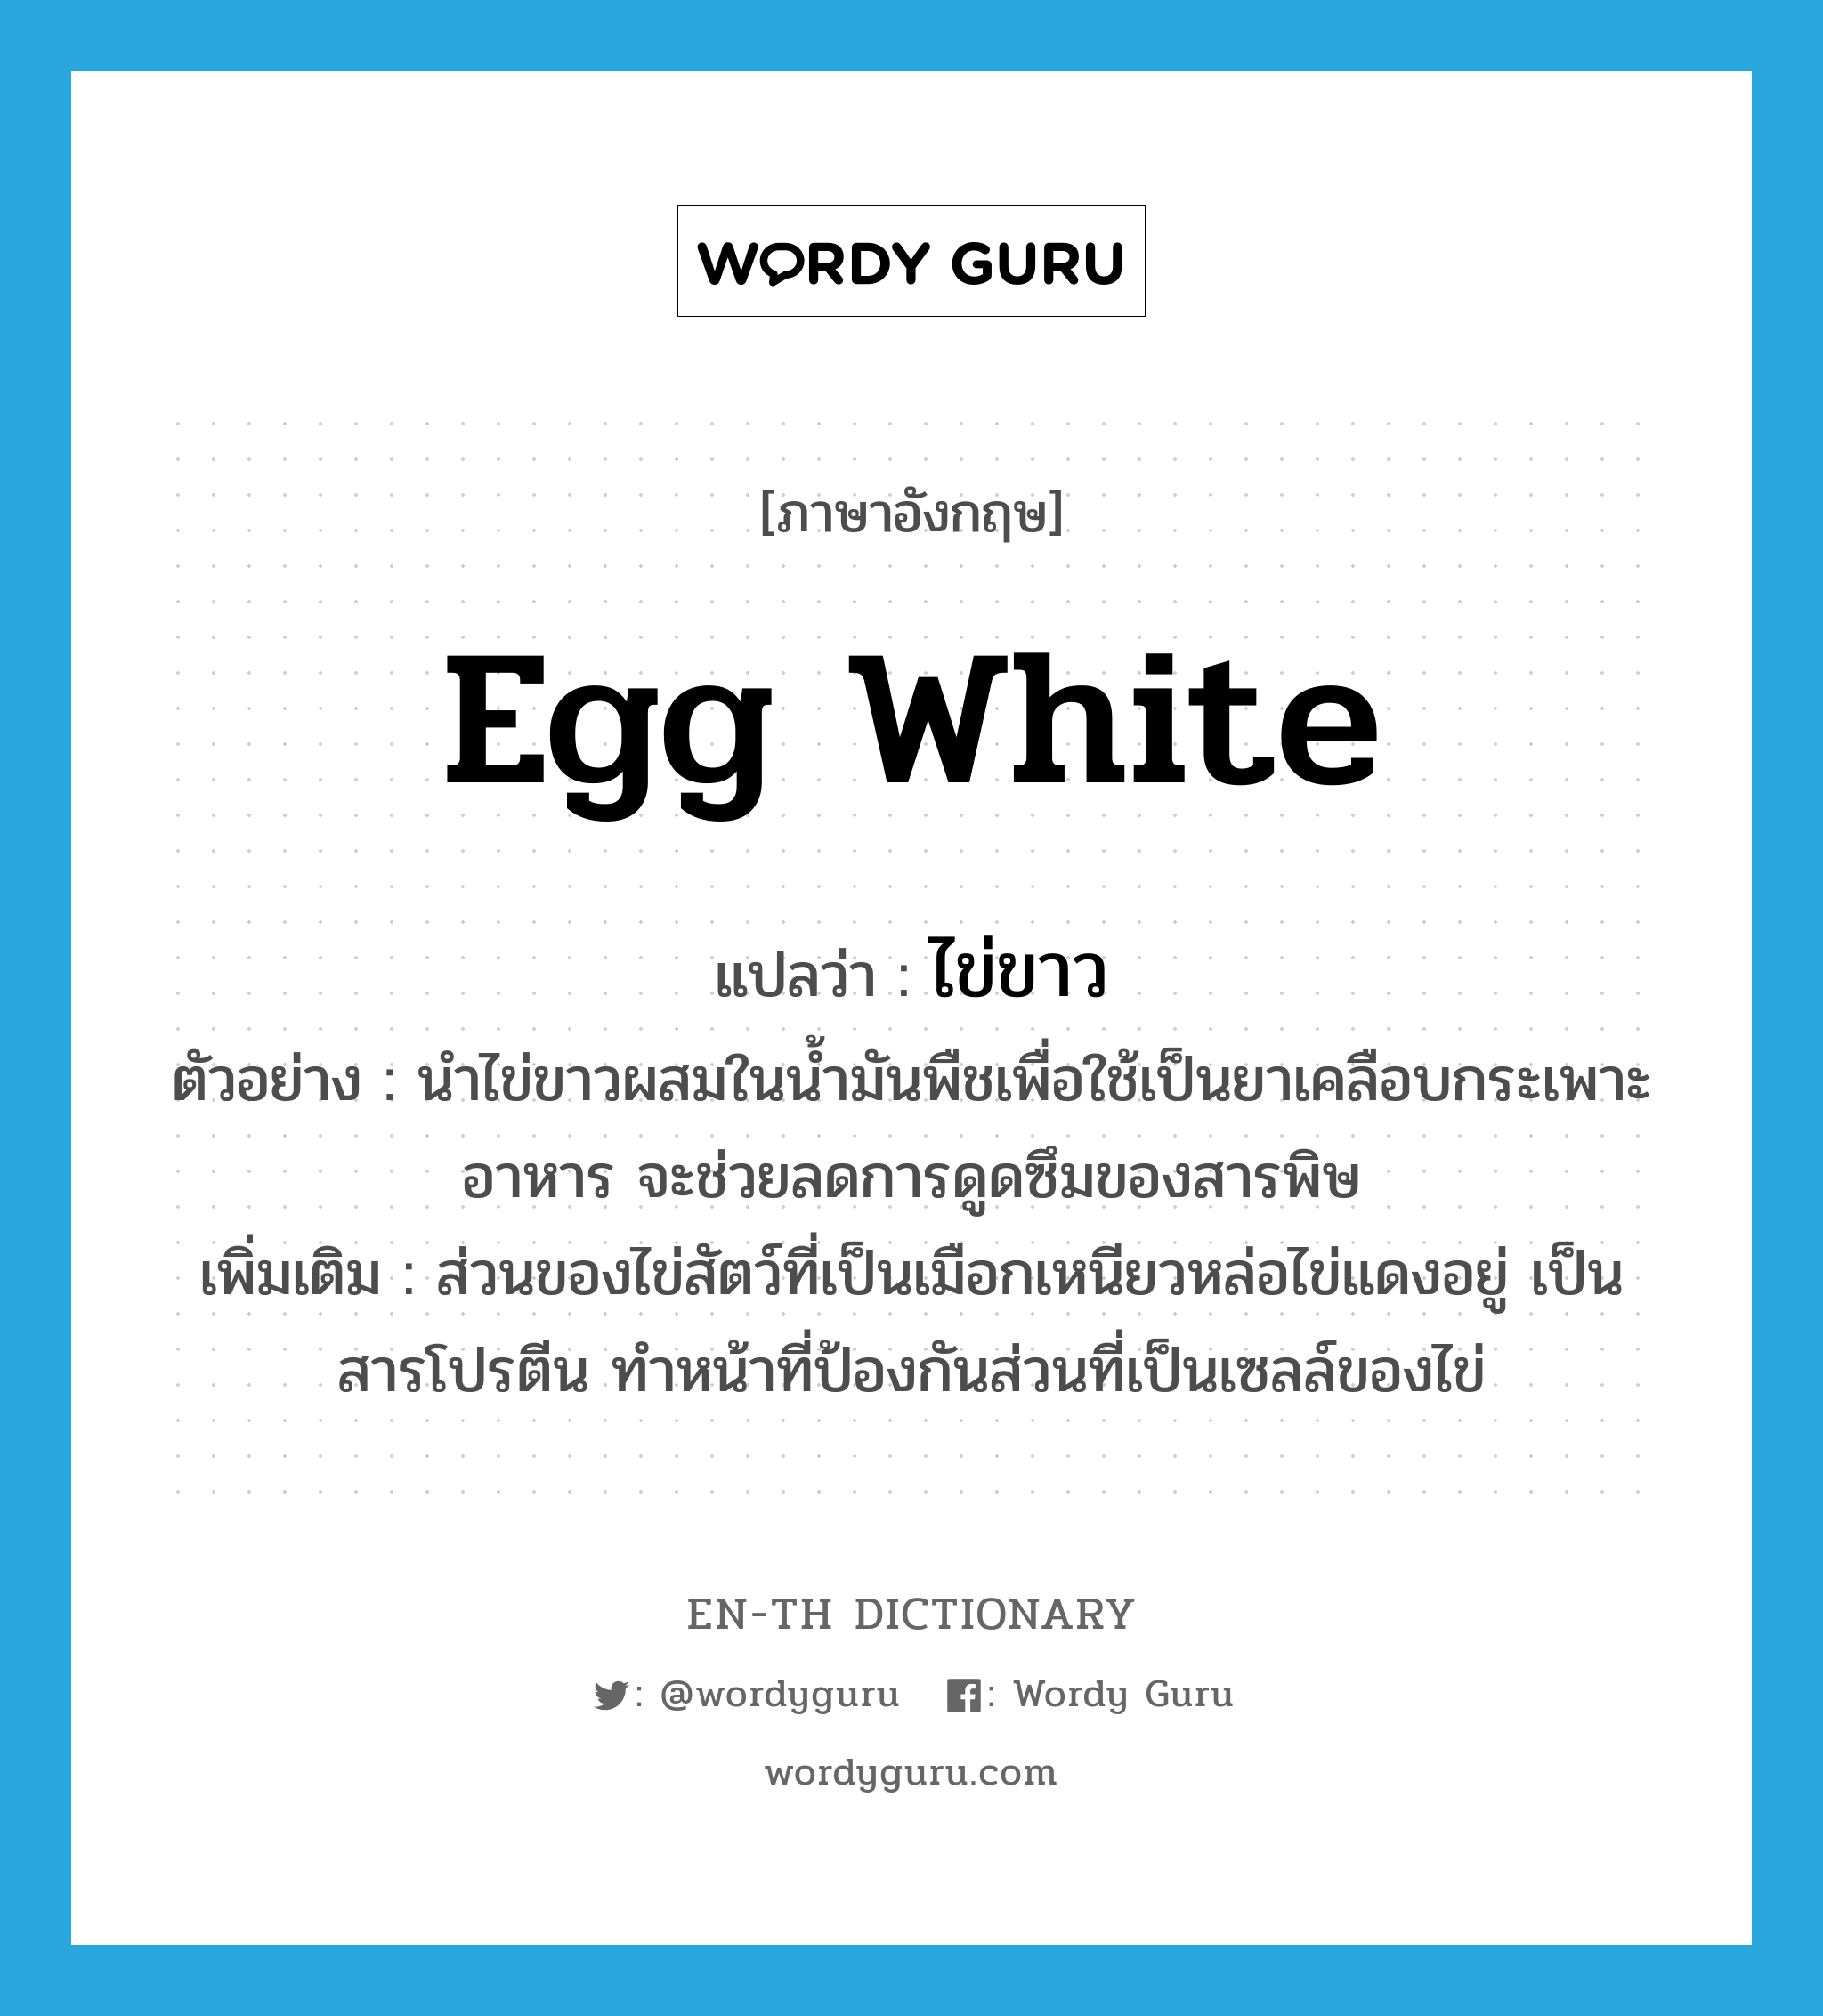 egg white แปลว่า?, คำศัพท์ภาษาอังกฤษ egg white แปลว่า ไข่ขาว ประเภท N ตัวอย่าง นำไข่ขาวผสมในน้ำมันพืชเพื่อใช้เป็นยาเคลือบกระเพาะอาหาร จะช่วยลดการดูดซึมของสารพิษ เพิ่มเติม ส่วนของไข่สัตว์ที่เป็นเมือกเหนียวหล่อไข่แดงอยู่ เป็นสารโปรตีน ทำหน้าที่ป้องกันส่วนที่เป็นเซลล์ของไข่ หมวด N